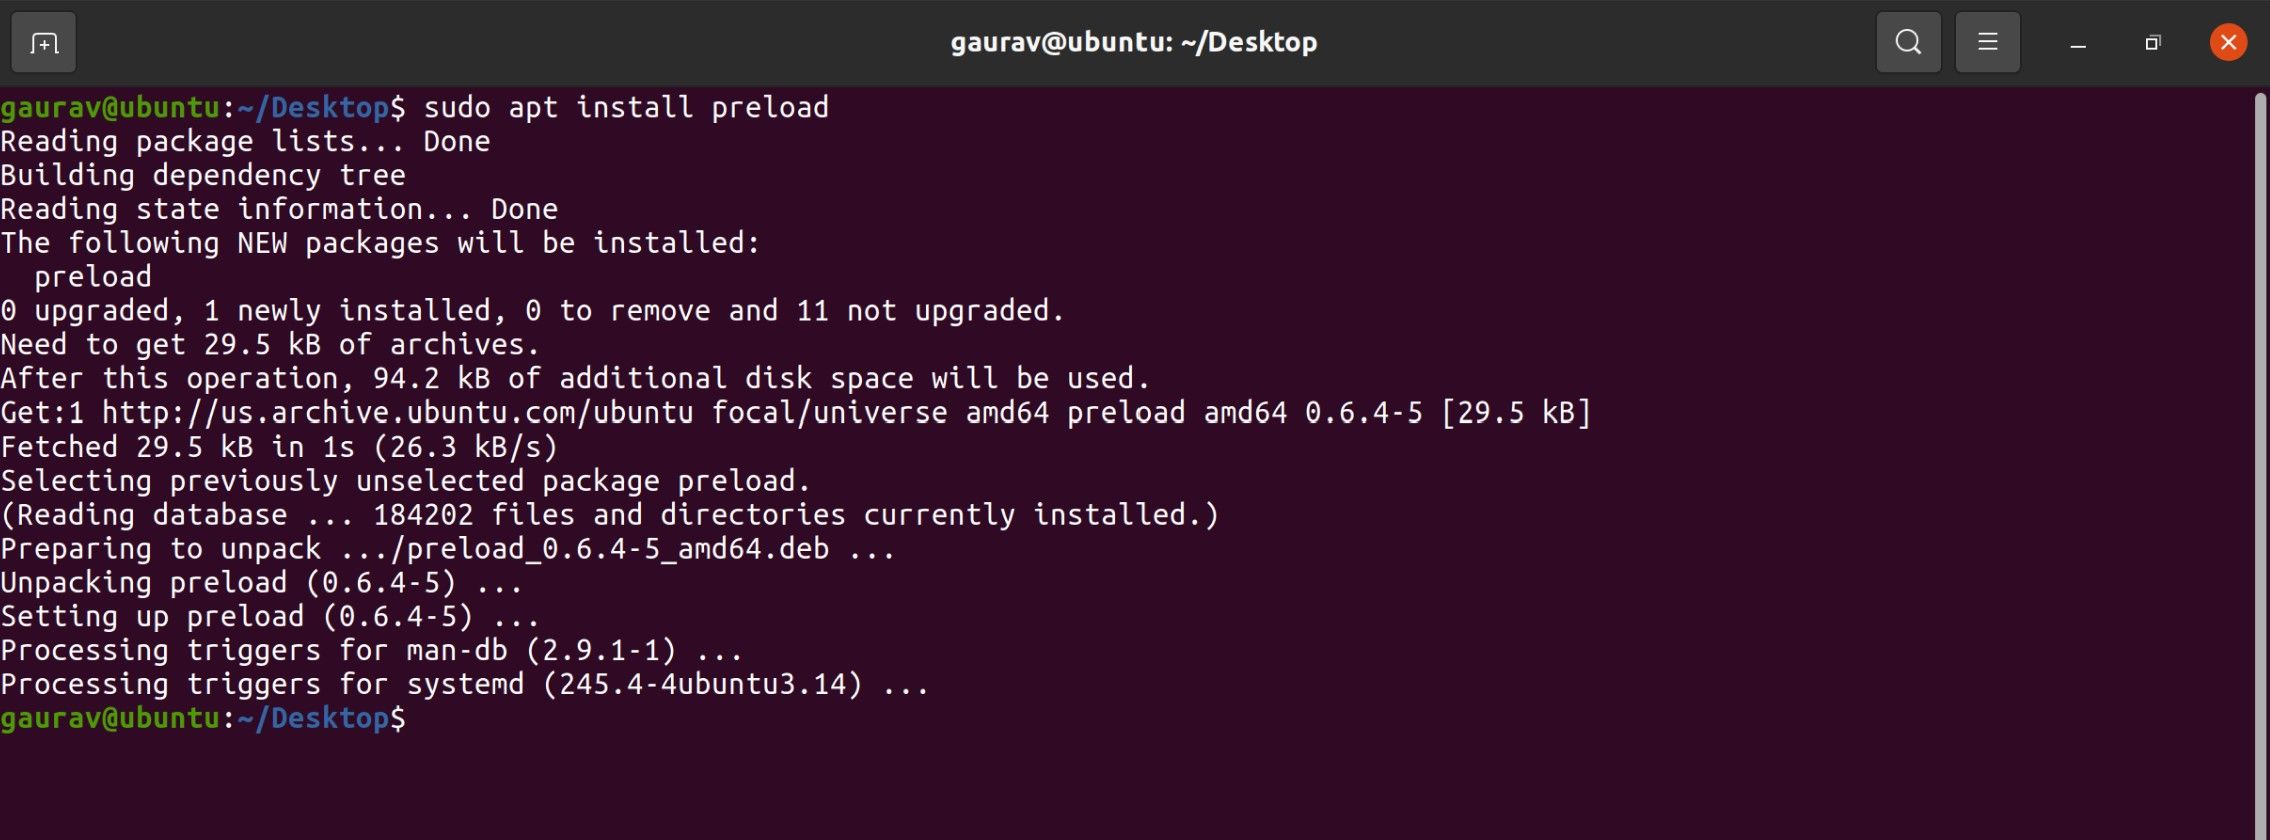 Ubuntu's terminal interface